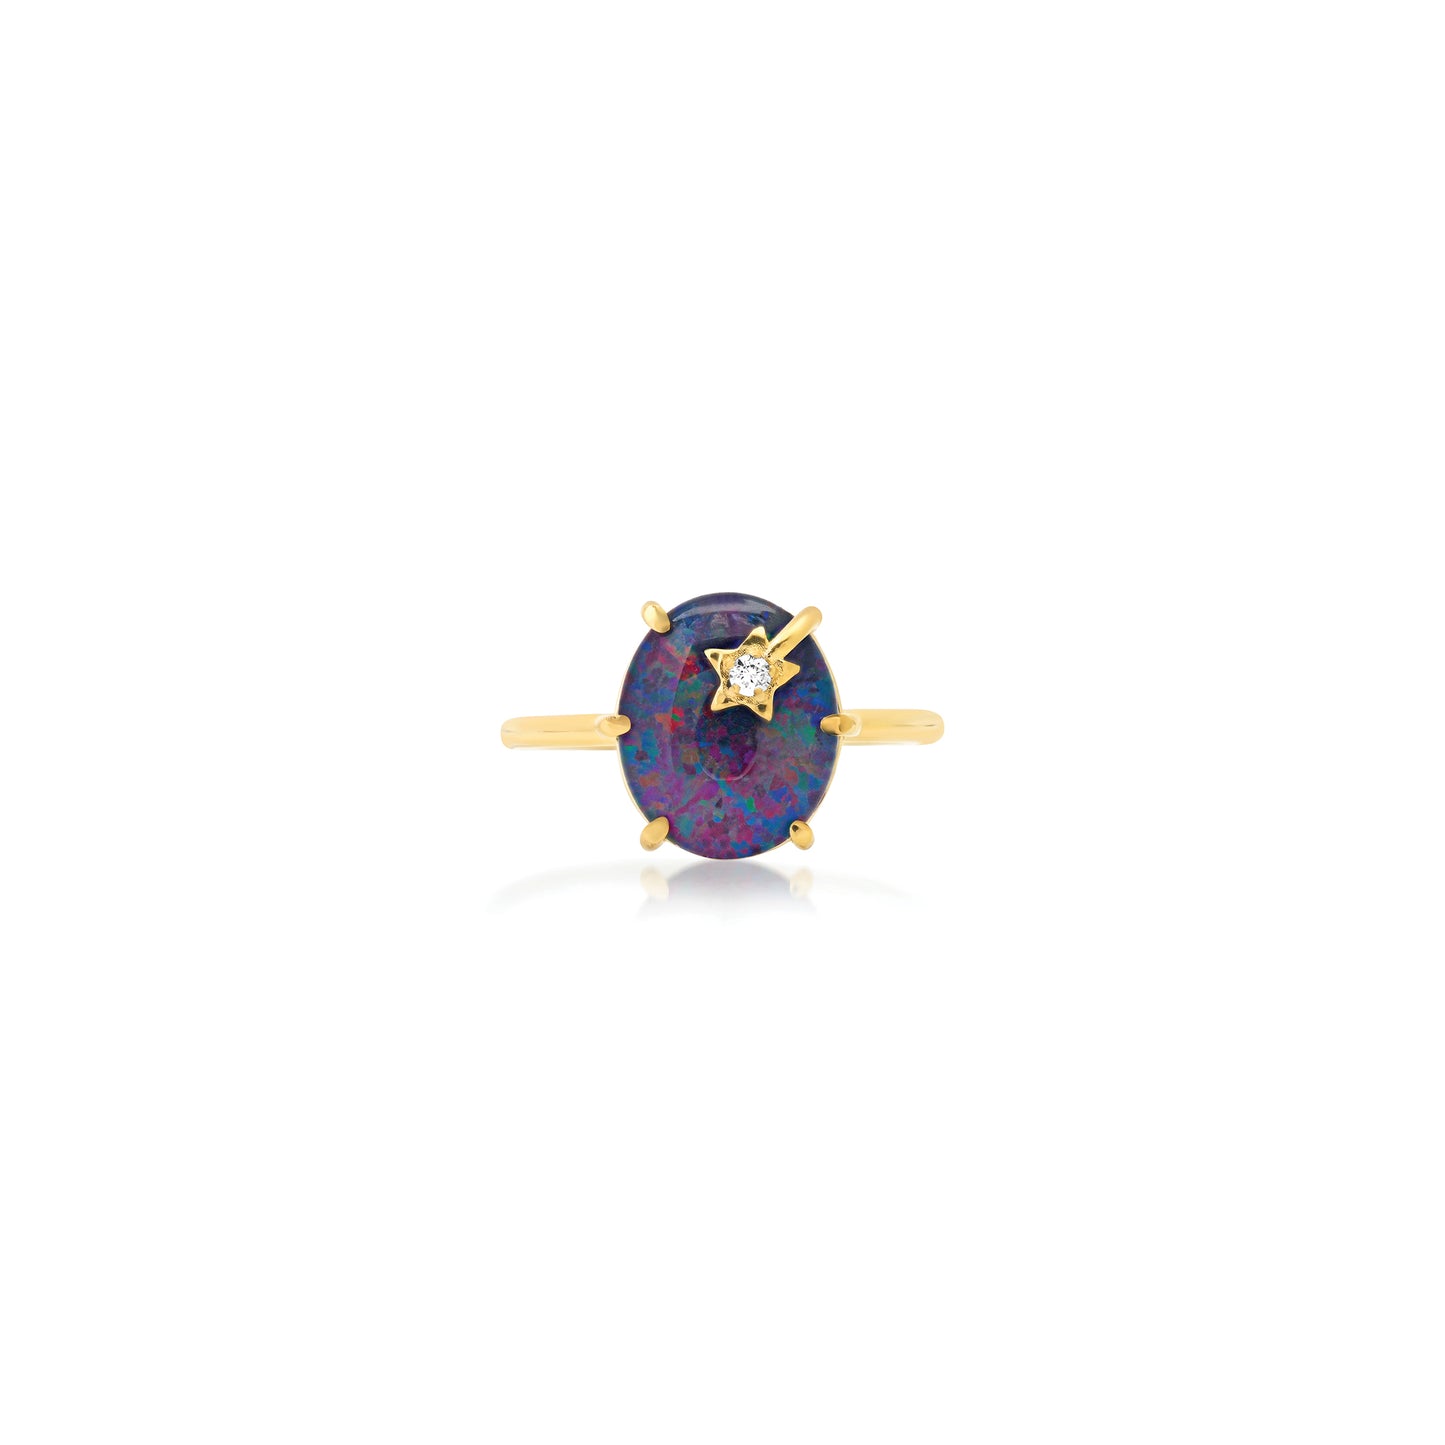 Mini Galaxy Australian Opal Ring